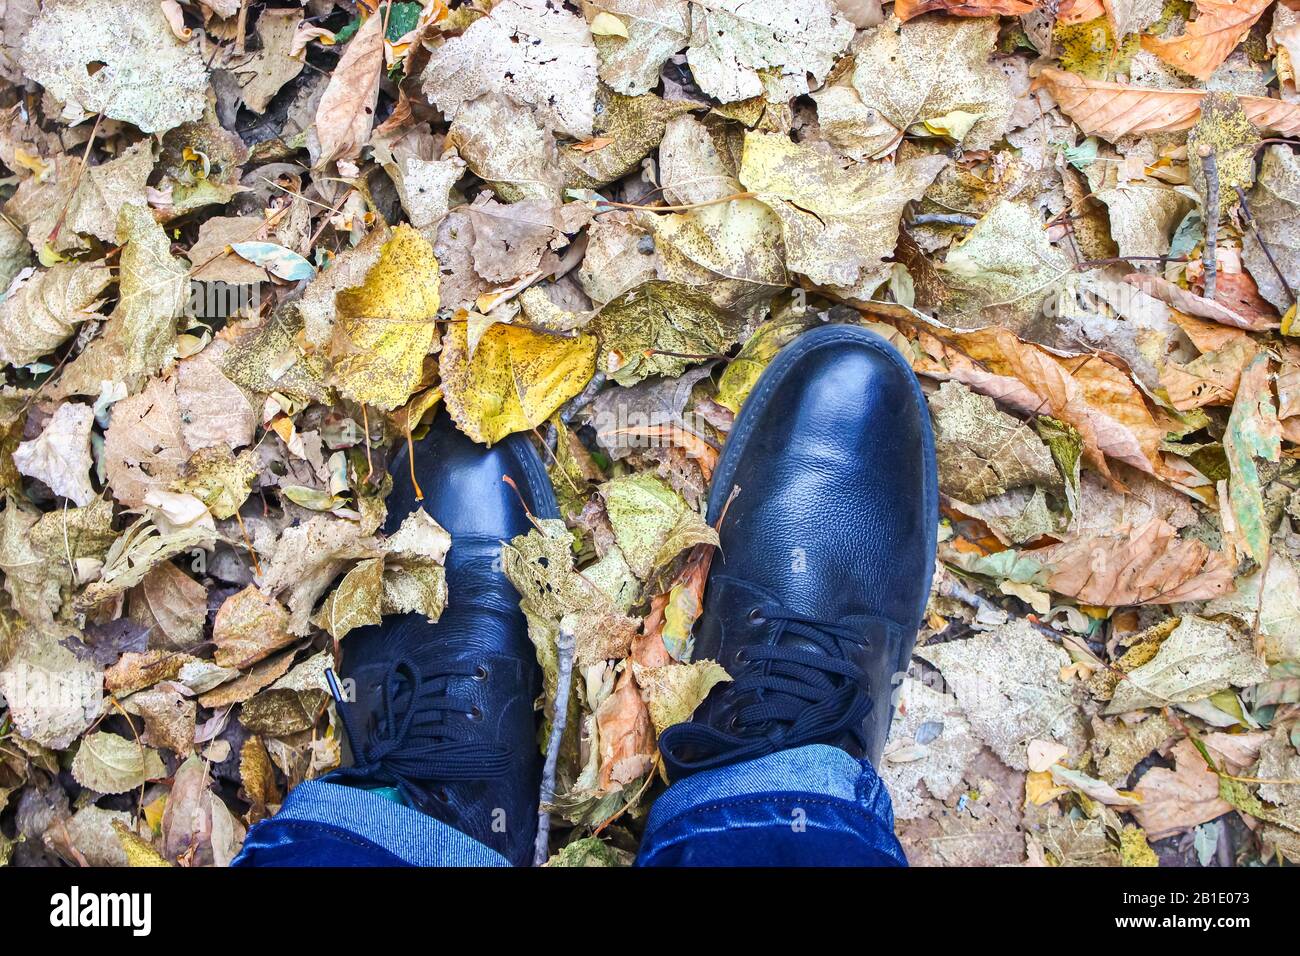 Une personne portant des chaussures de cuir marcher sur les feuilles mortes de l'automne feuillage Banque D'Images